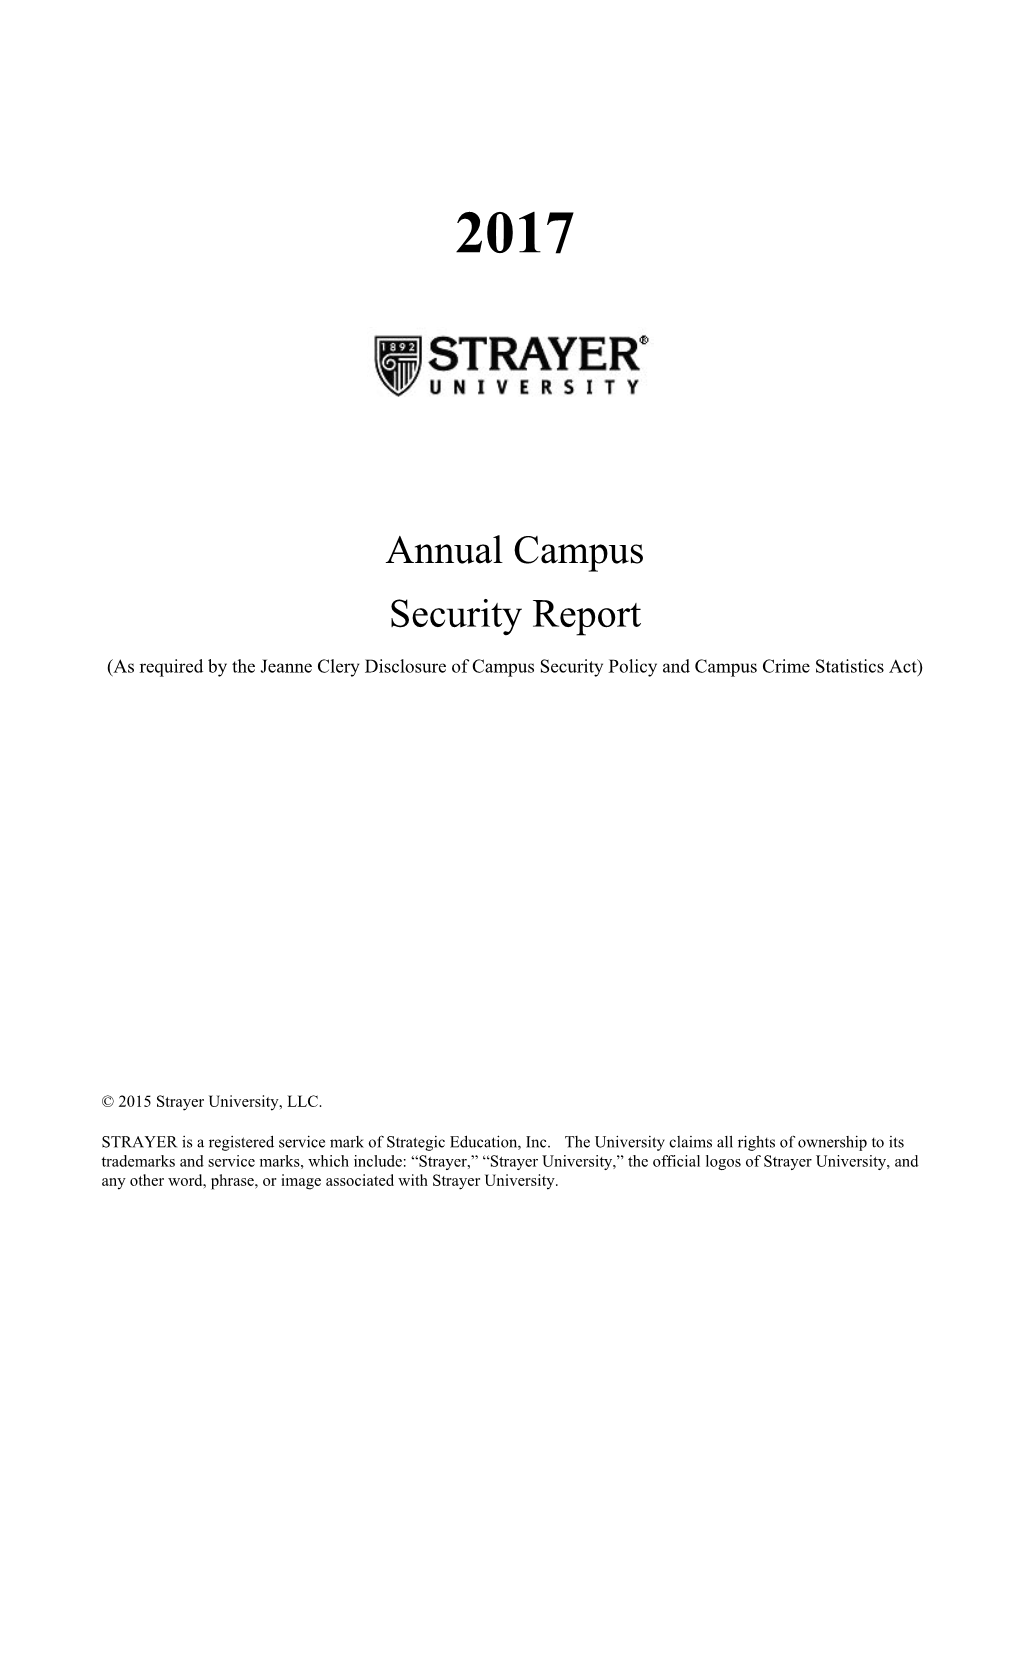 Annual Campus Security Report